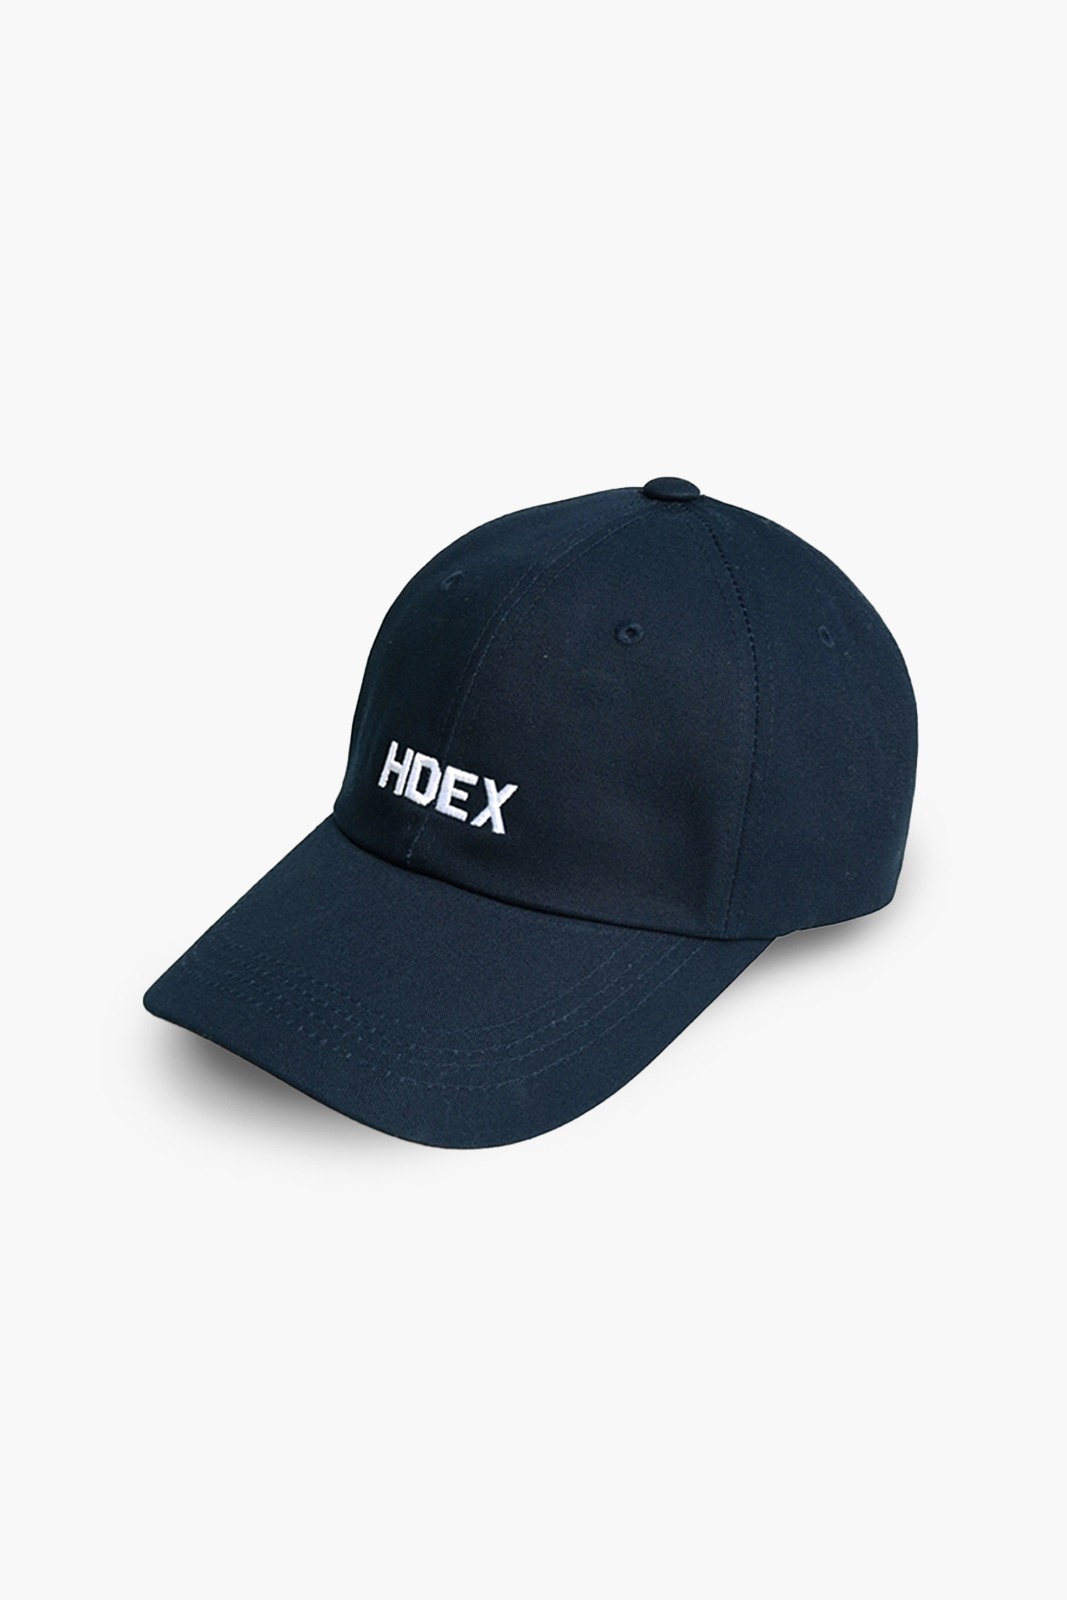 HDEX, 메인로고 볼캡 5 color